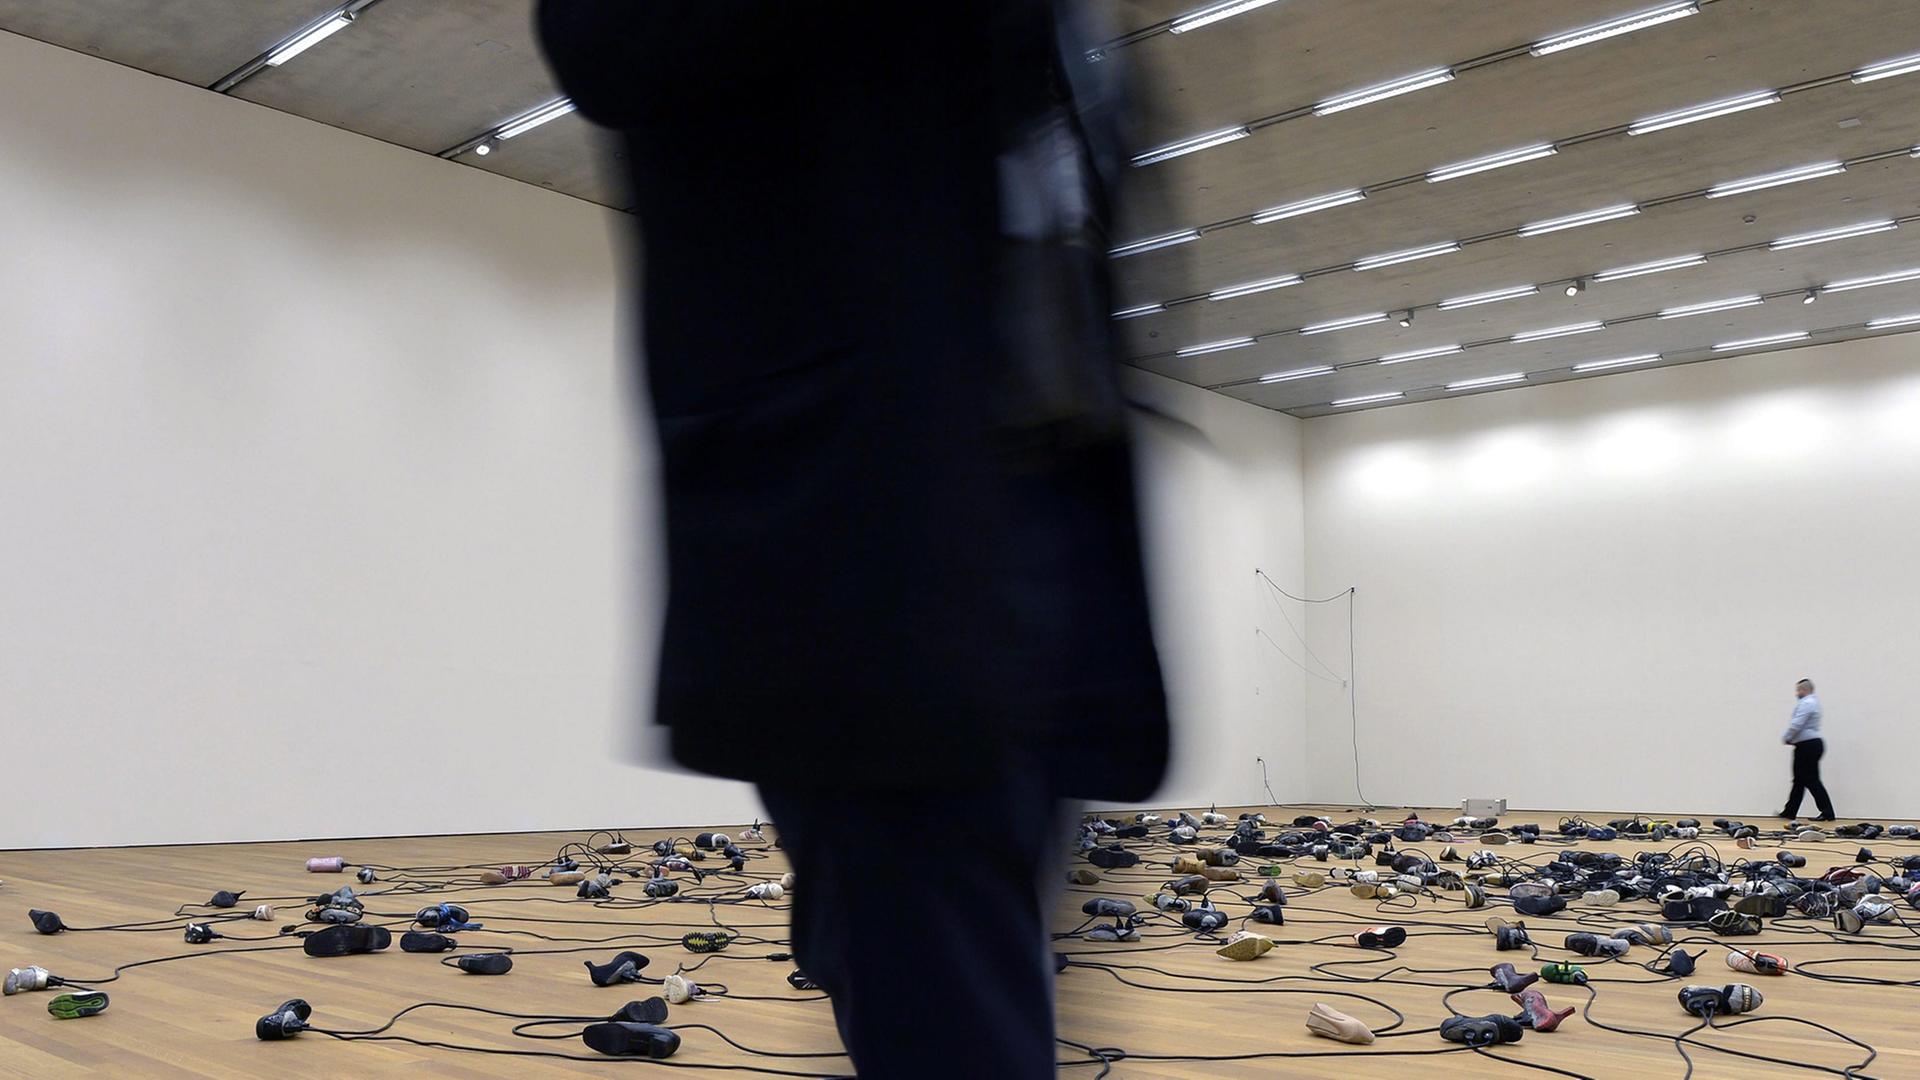 Miteinander verkabelte Schuhe liegen auf dem Boden einer Museumshalle. Ein schwarz gekleideter Mann läuft durchs Bild.